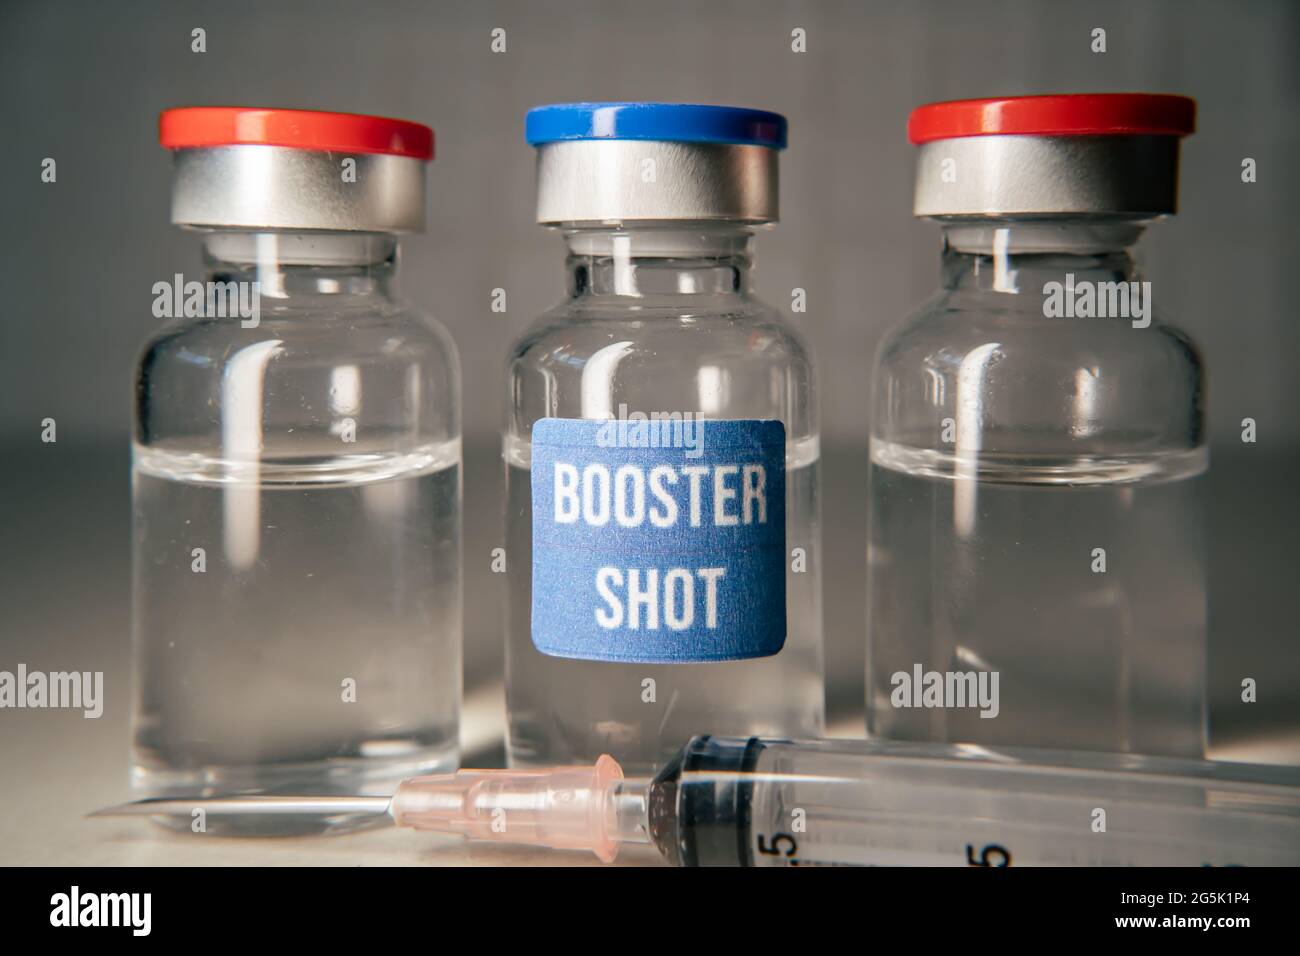 Booster shot covid-19 vaccine concept Stock Photo